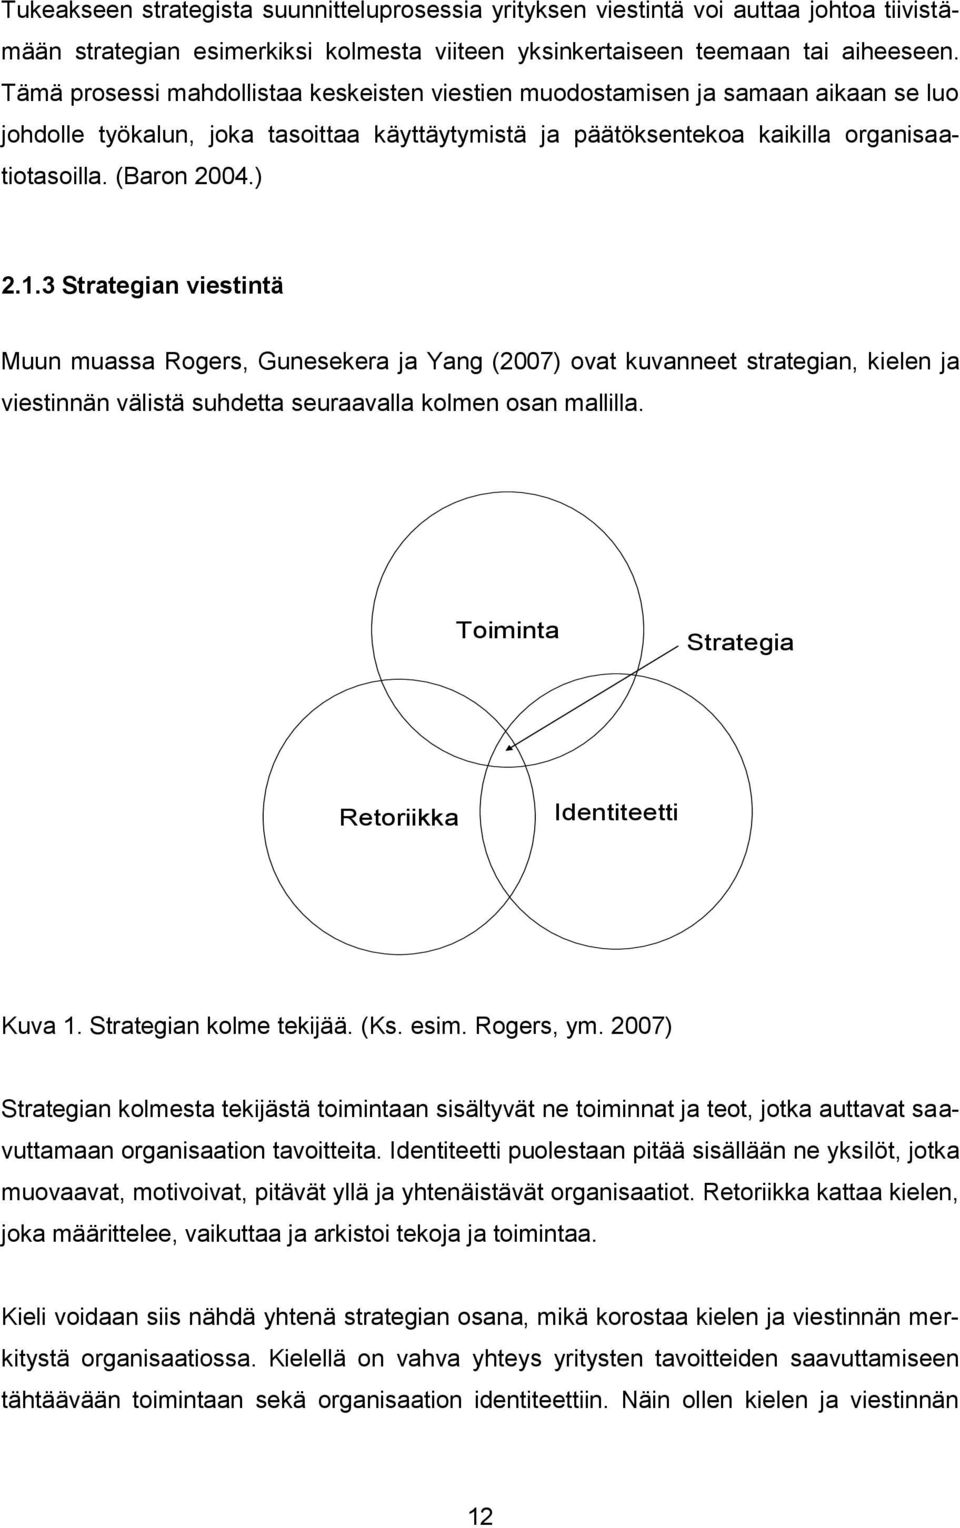 1.3 Strategian viestintä Muun muassa Rogers, Gunesekera ja Yang (2007) ovat kuvanneet strategian, kielen ja viestinnän välistä suhdetta seuraavalla kolmen osan mallilla.